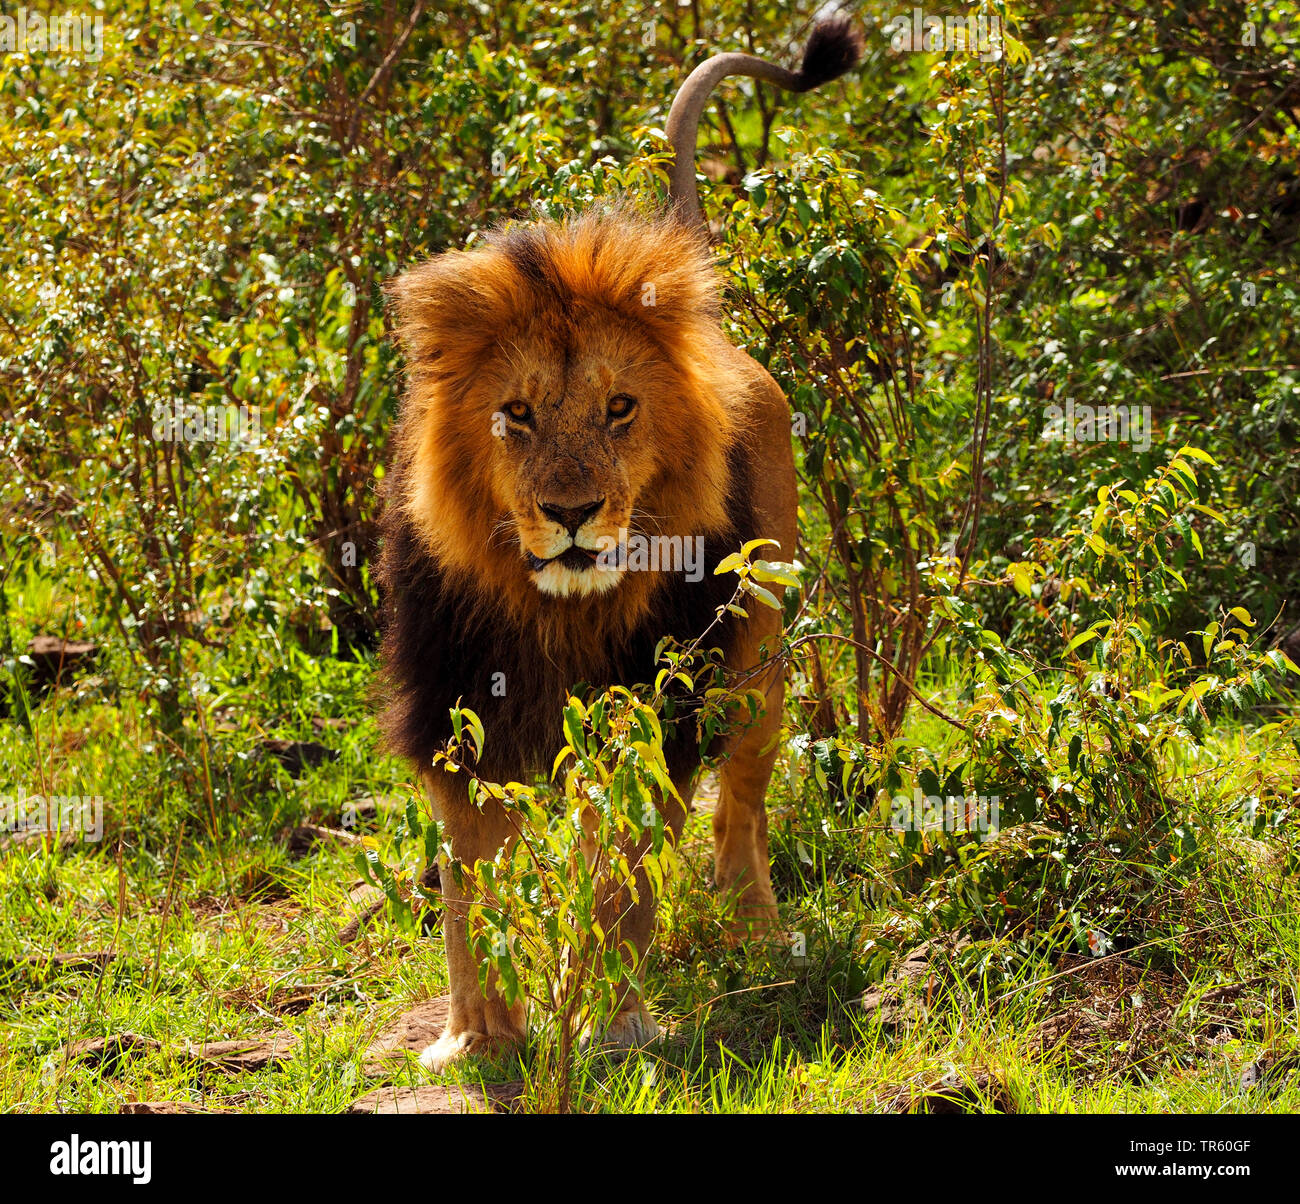 Lion (Panthera leo), homme lion debout dans l'arbuste, vue avant, Kenya, Masai Mara National Park Banque D'Images